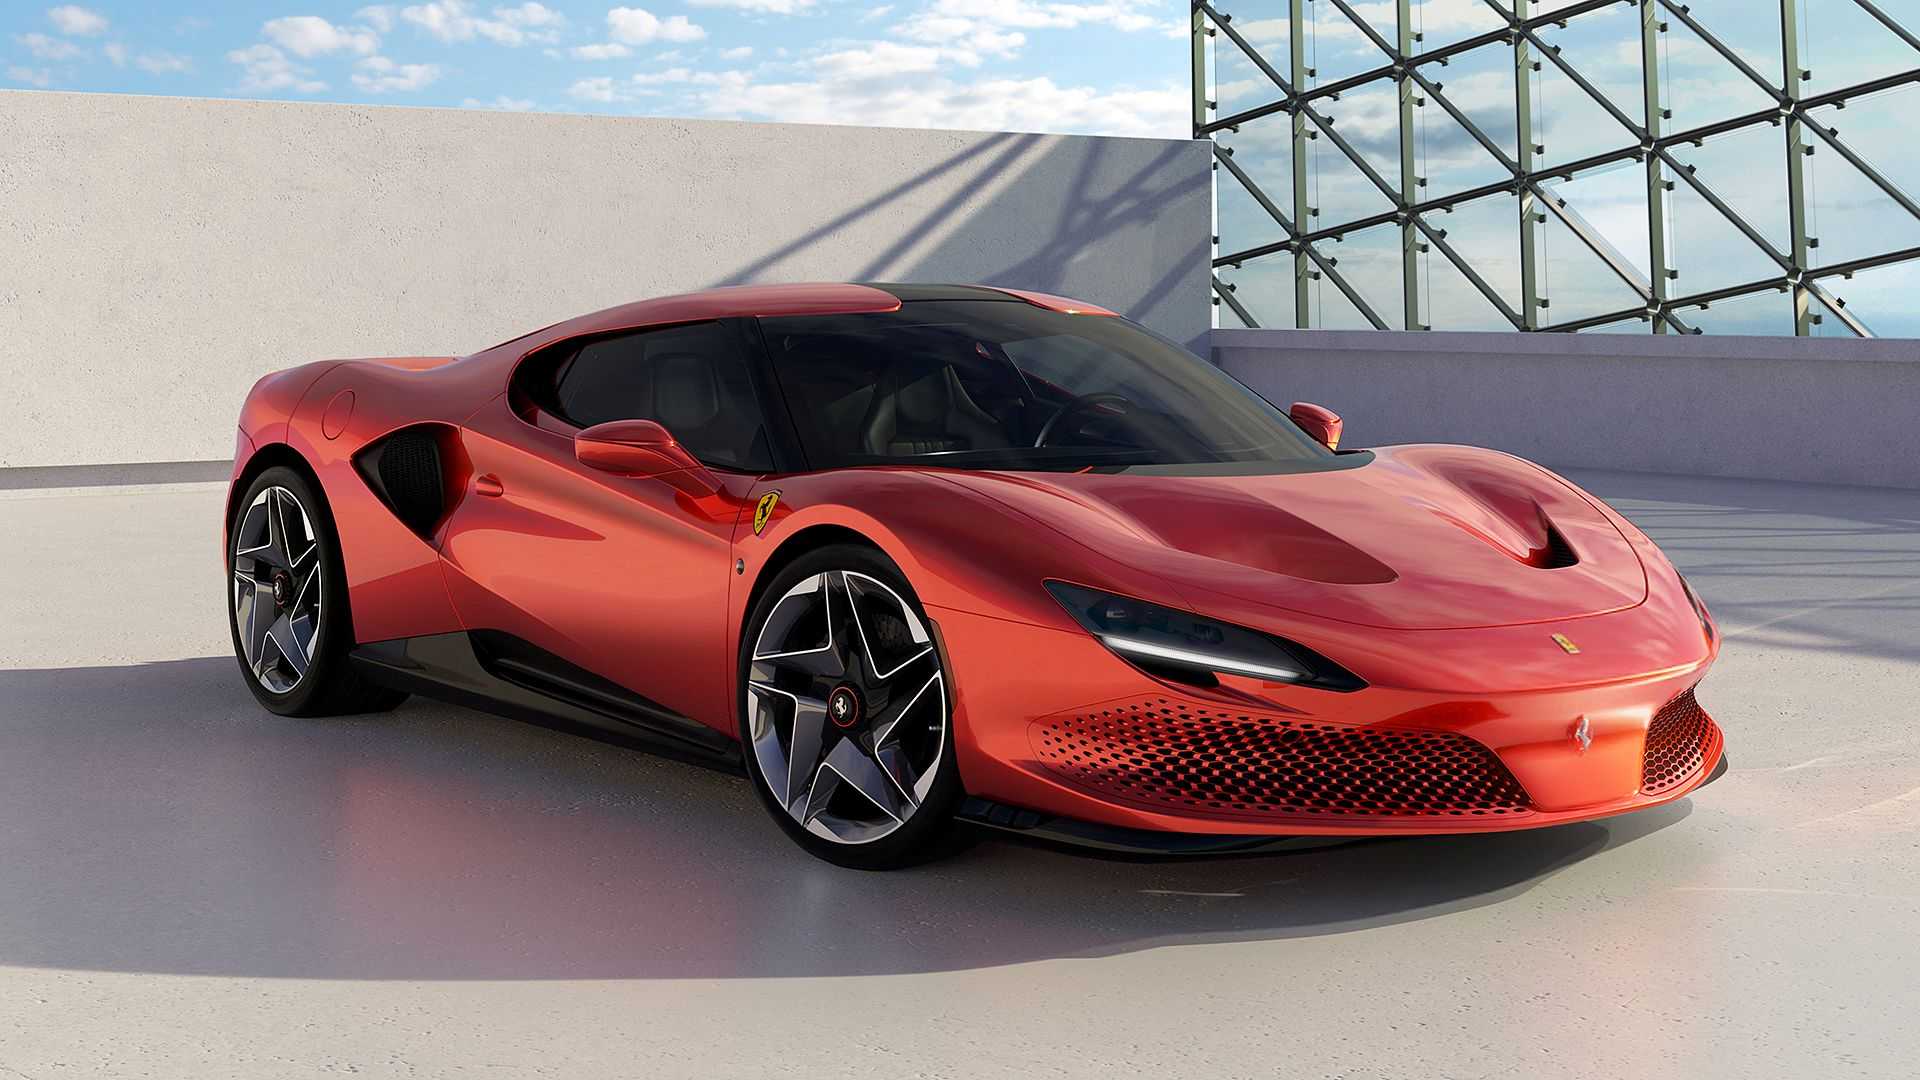 Ufficiale: Nuova Ferrari SP48 Unica